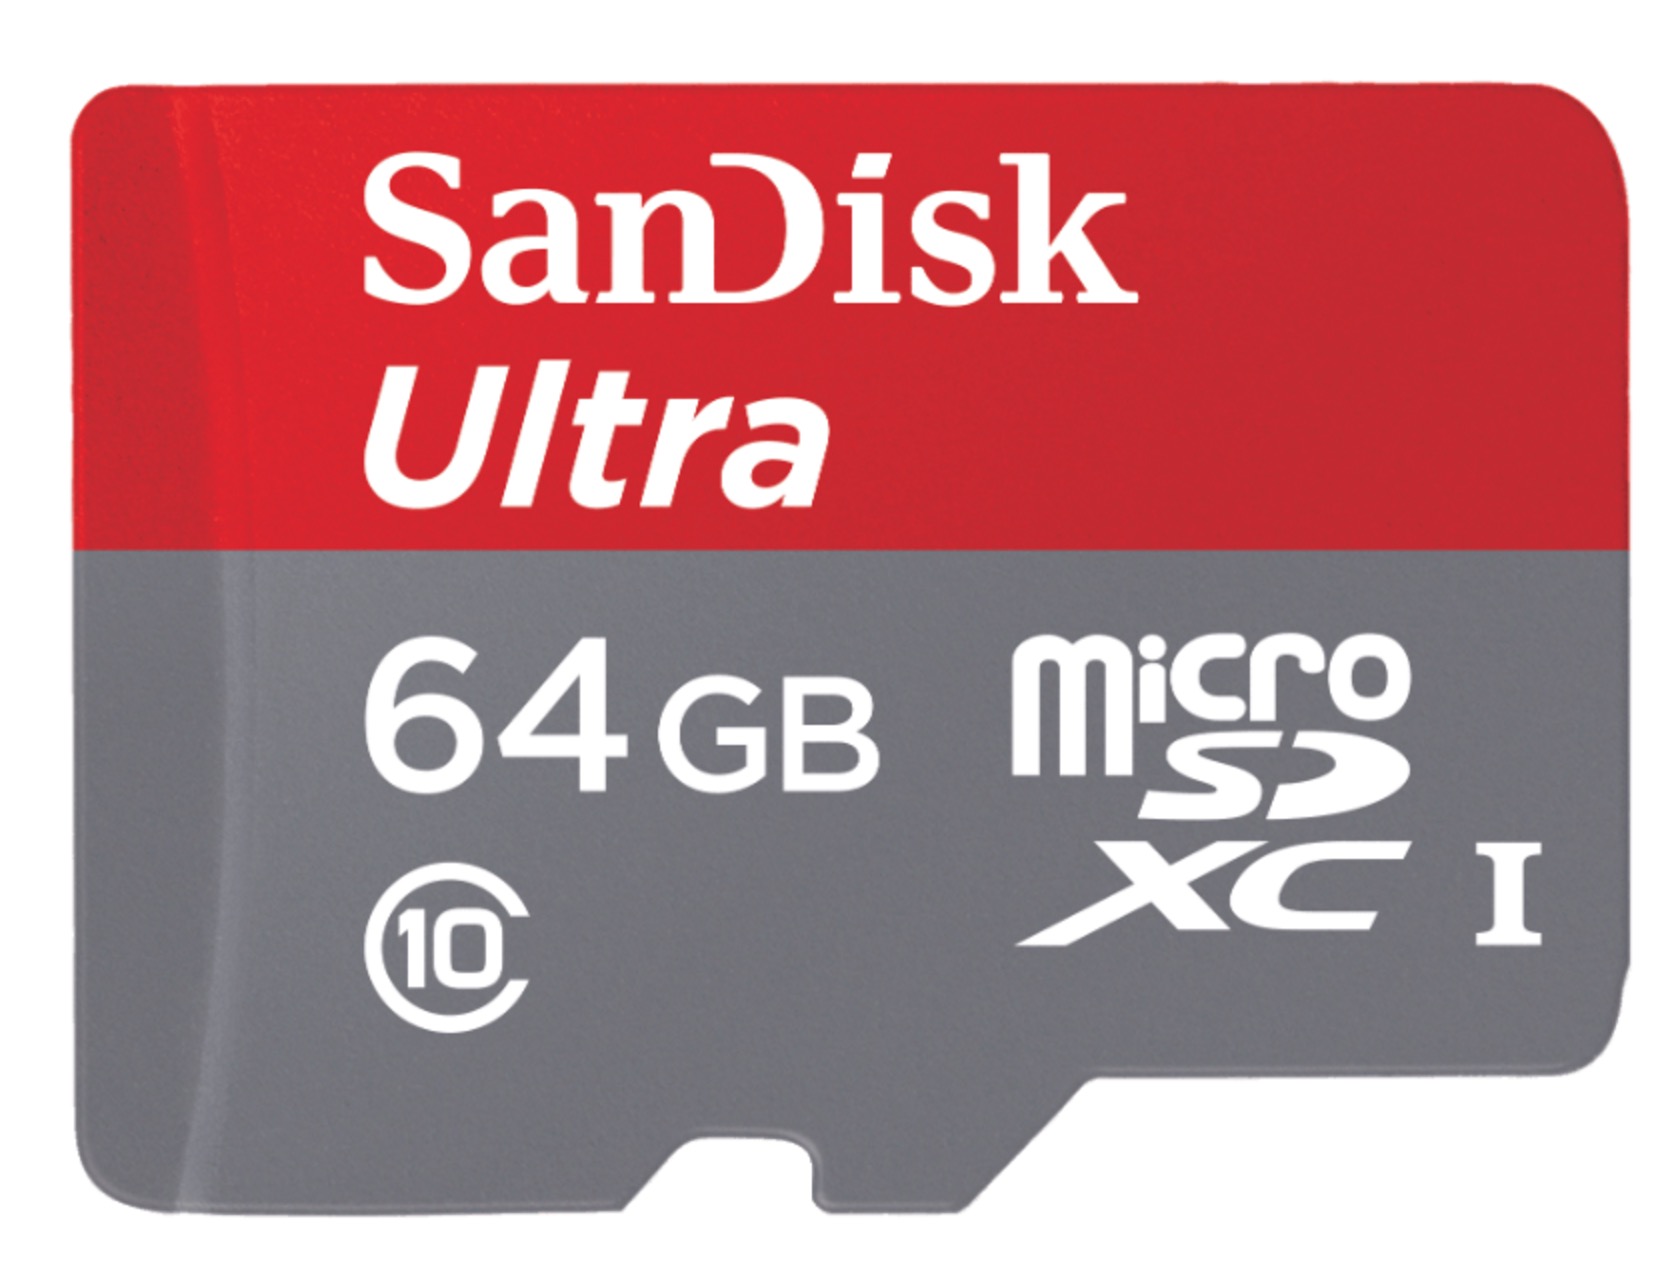 SanDisk Ultra microSDHC 64GB bis zu 80 MB/Sek Class 10 Speicherkarte + SD-Adapter für nur 17,- Euro